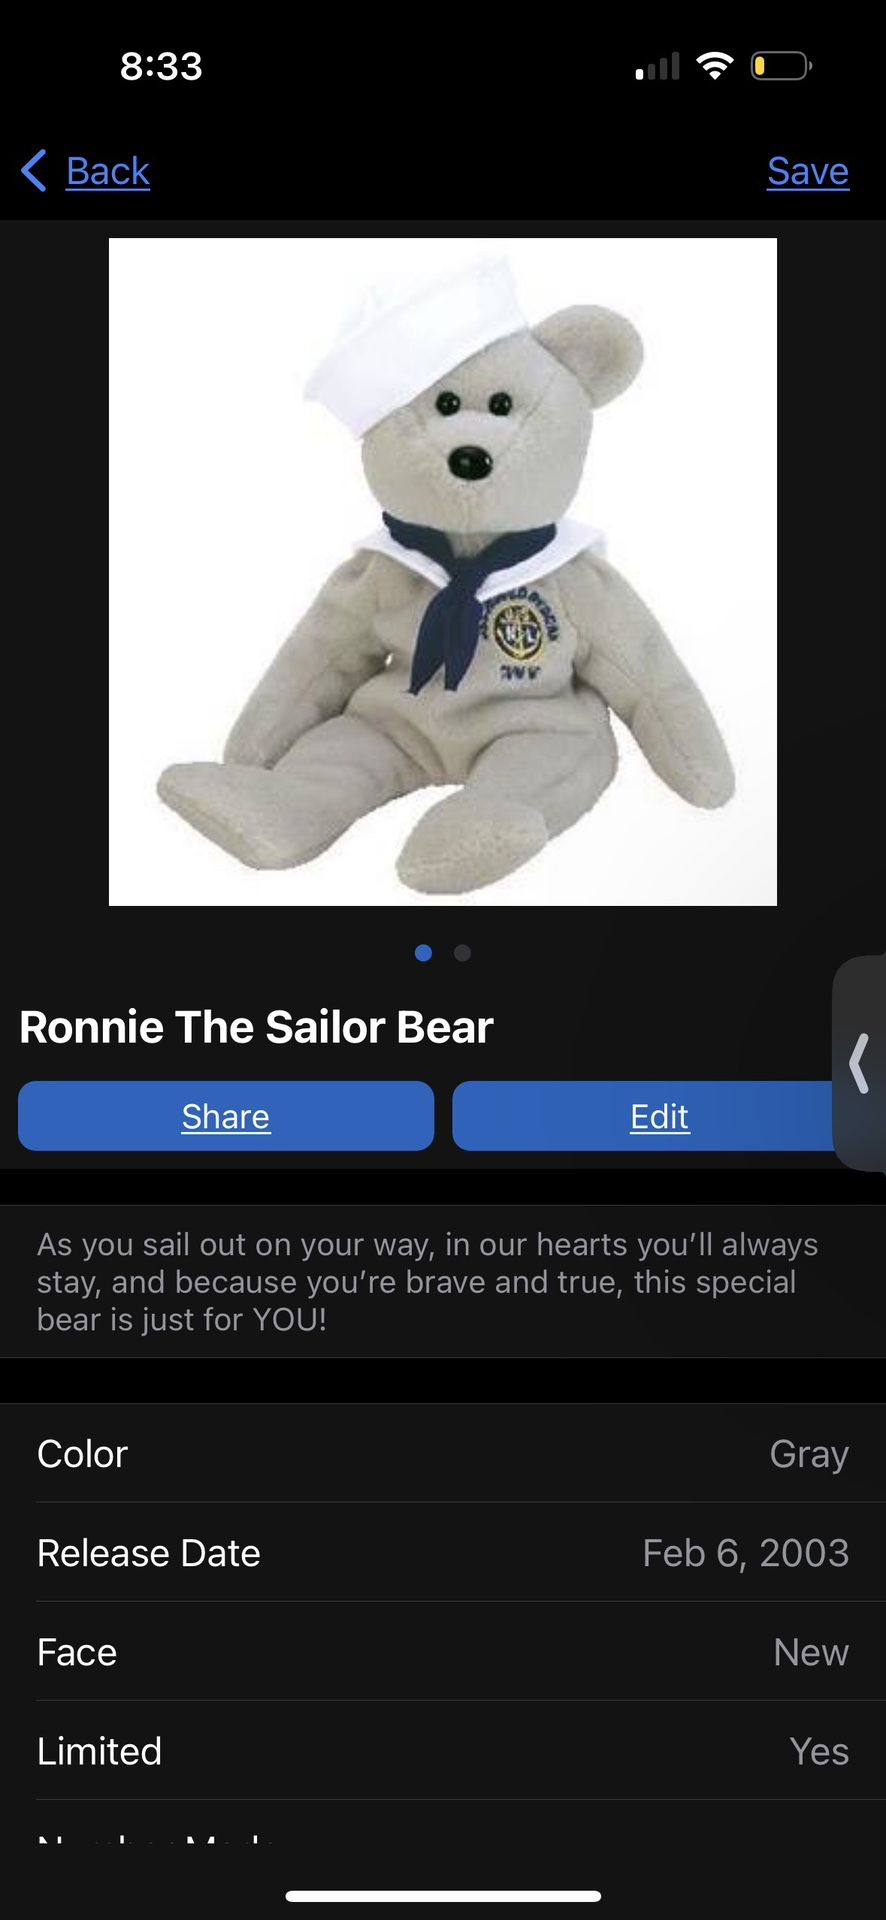 Ronnie The Sailor Bear 2003